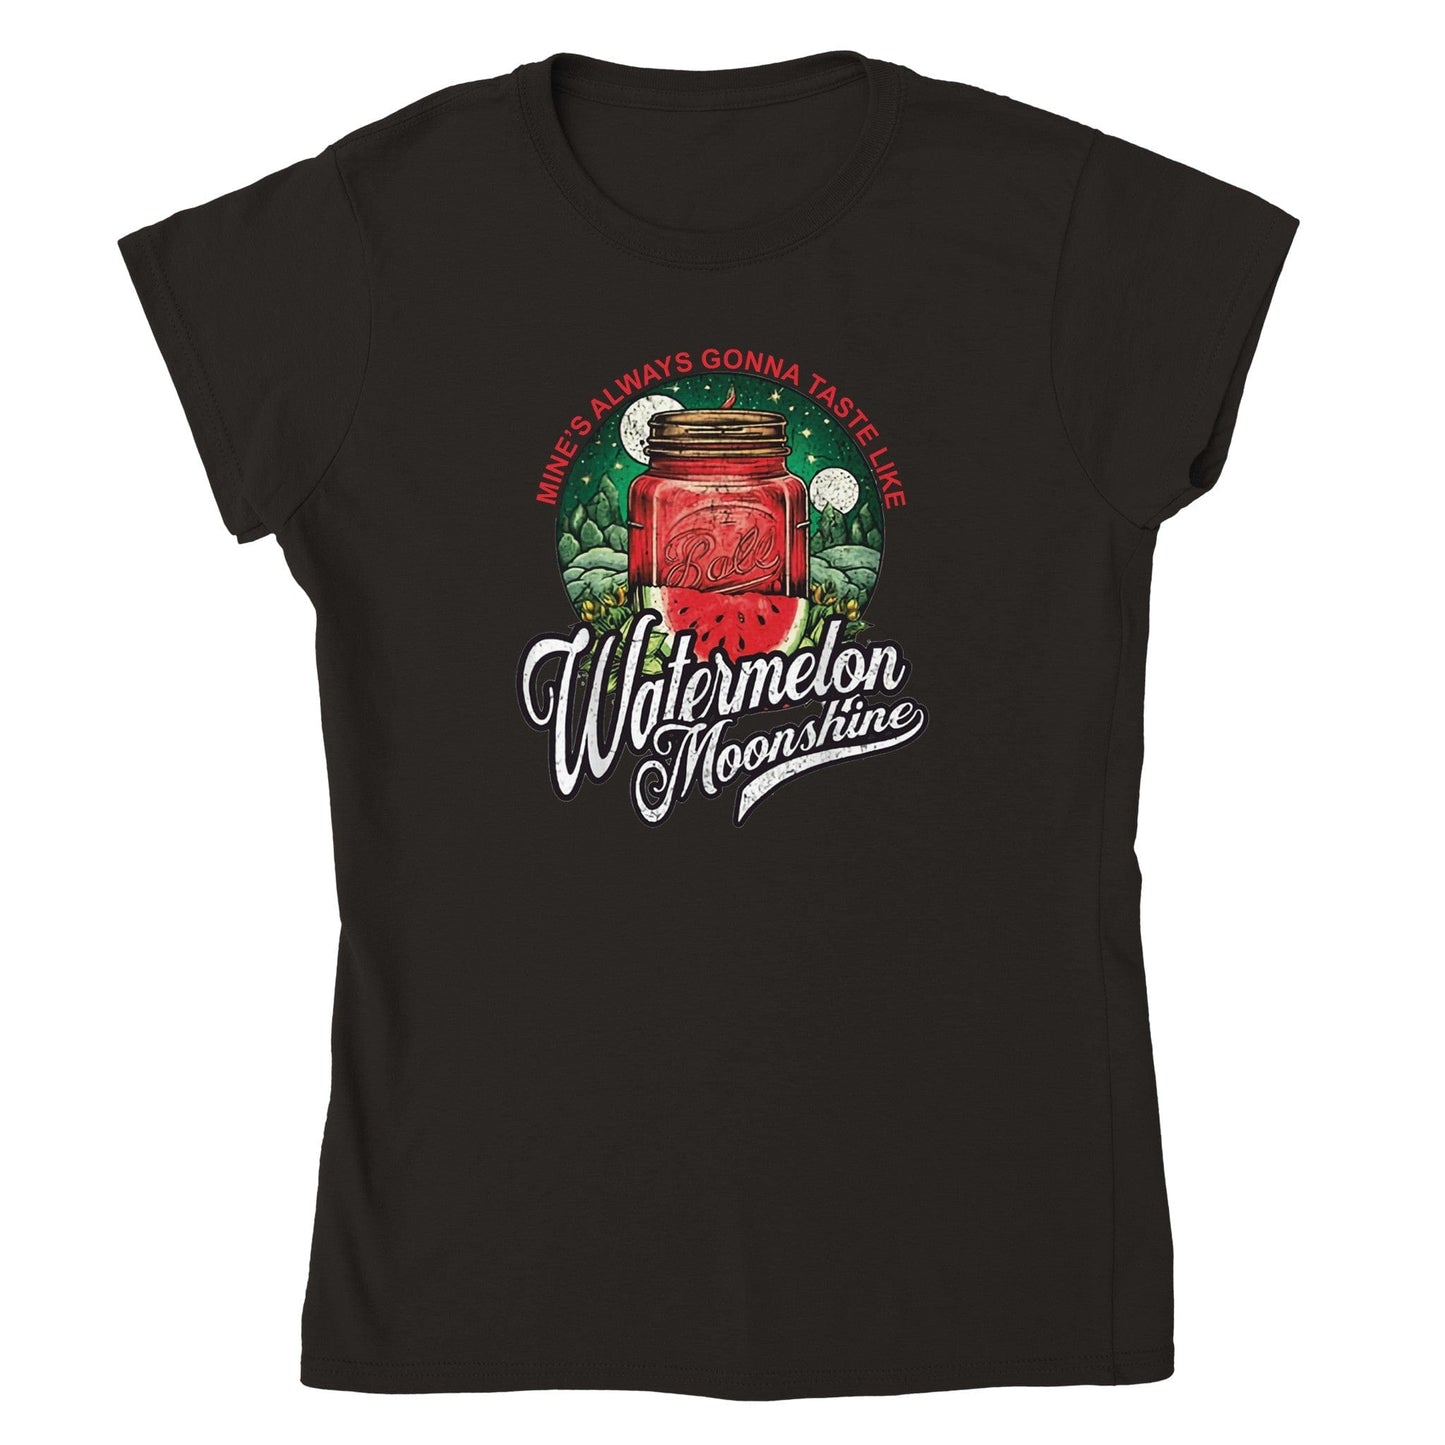 Watermelon Moonshine Lainey Wilson T-Shirt Australia Online Color Black / Womens / S